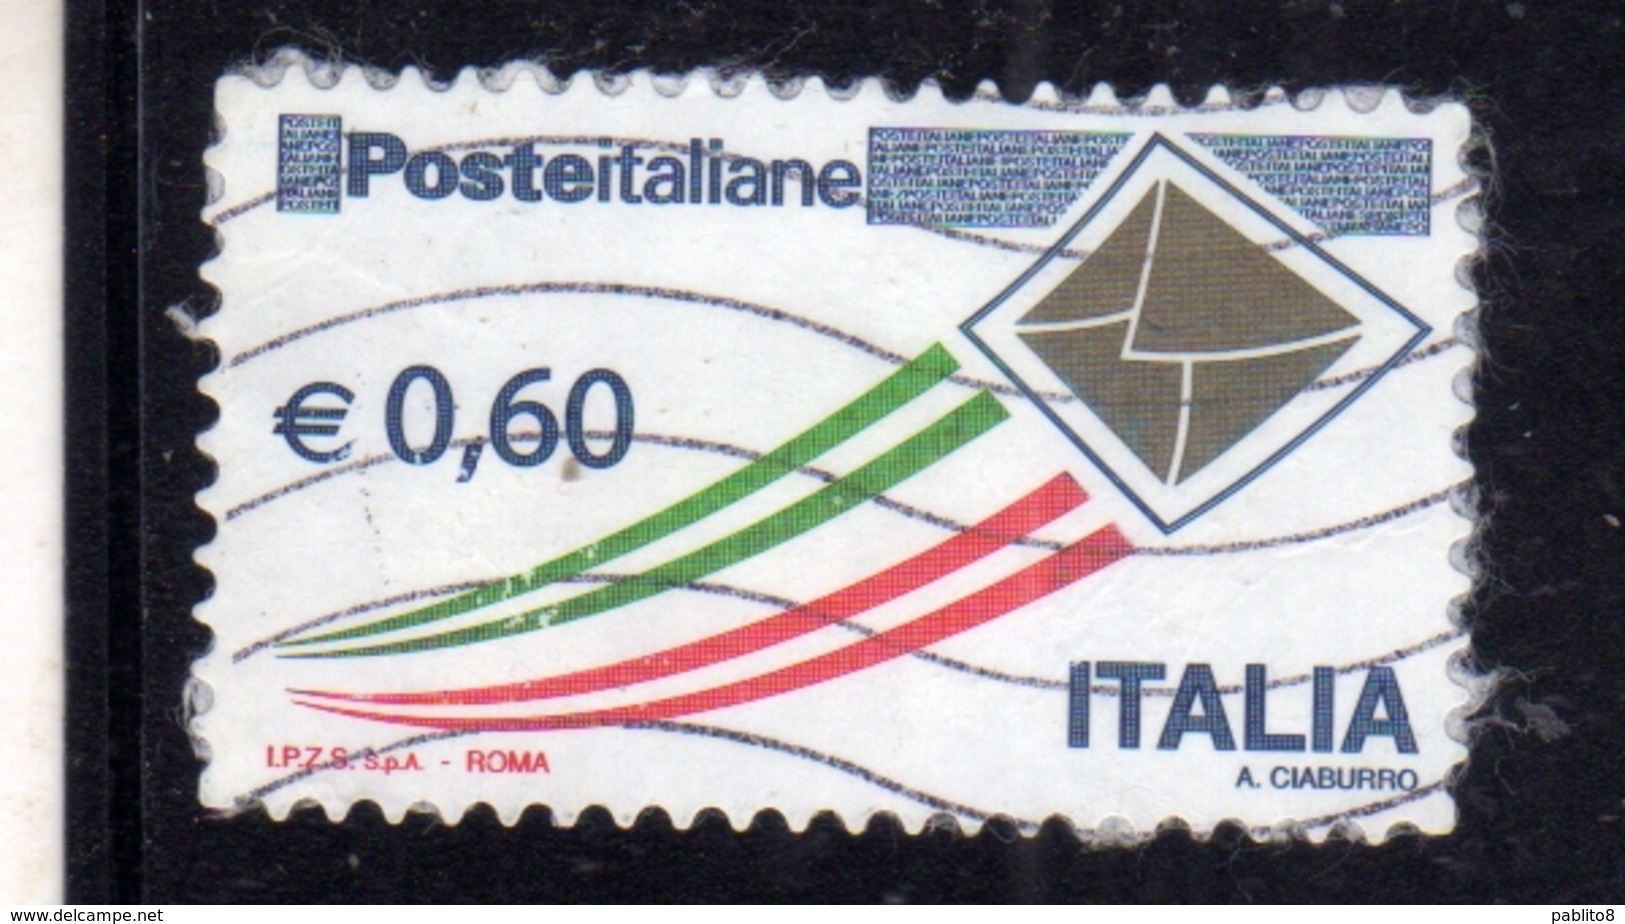 ITALIA REPUBBLICA ITALY REPUBLIC 2009 POSTA ITALIANA POSTE ITALIANE € 0,60 USATO USED OBLITERE' - 2001-10: Usati